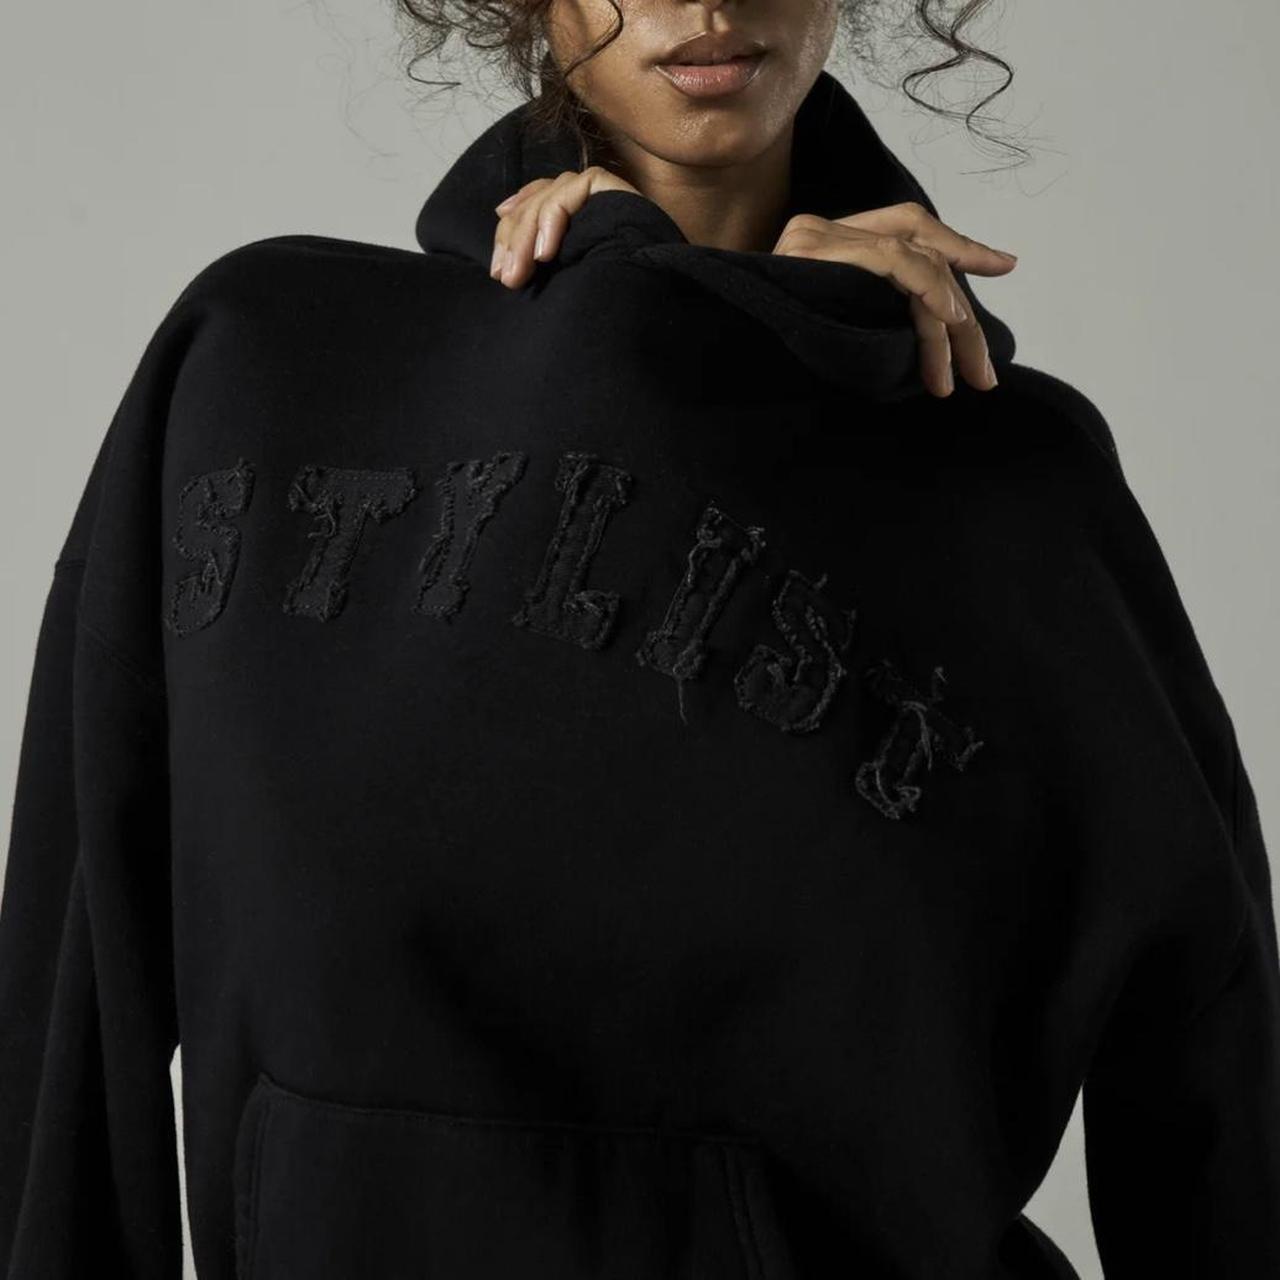 Sisters & seekers stylist black hoodie Size... - Depop